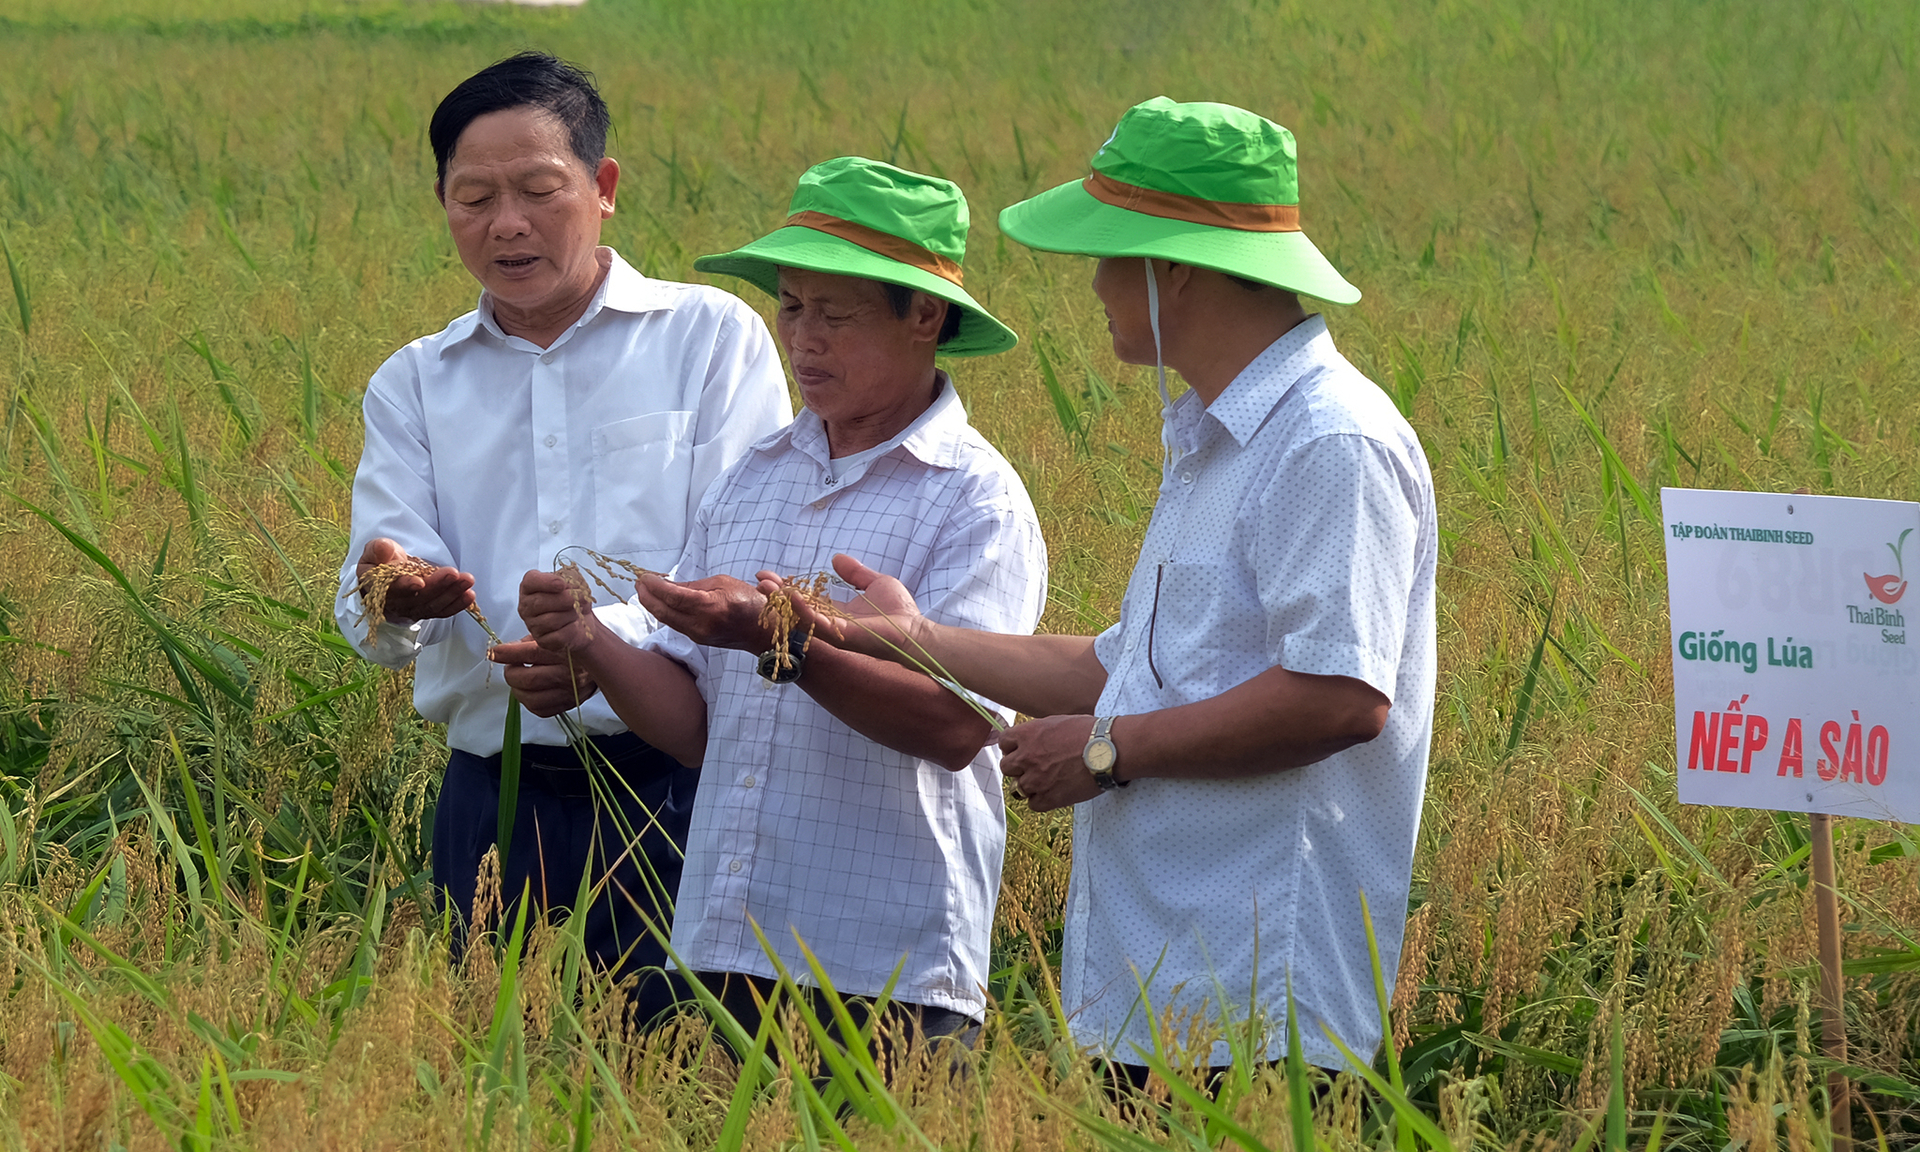 Mô hình thử nghiệm trồng lúa nếp A Sào tại huyện Lương Tài có quy mô khoảng 10ha. Ảnh: Bảo Thắng.